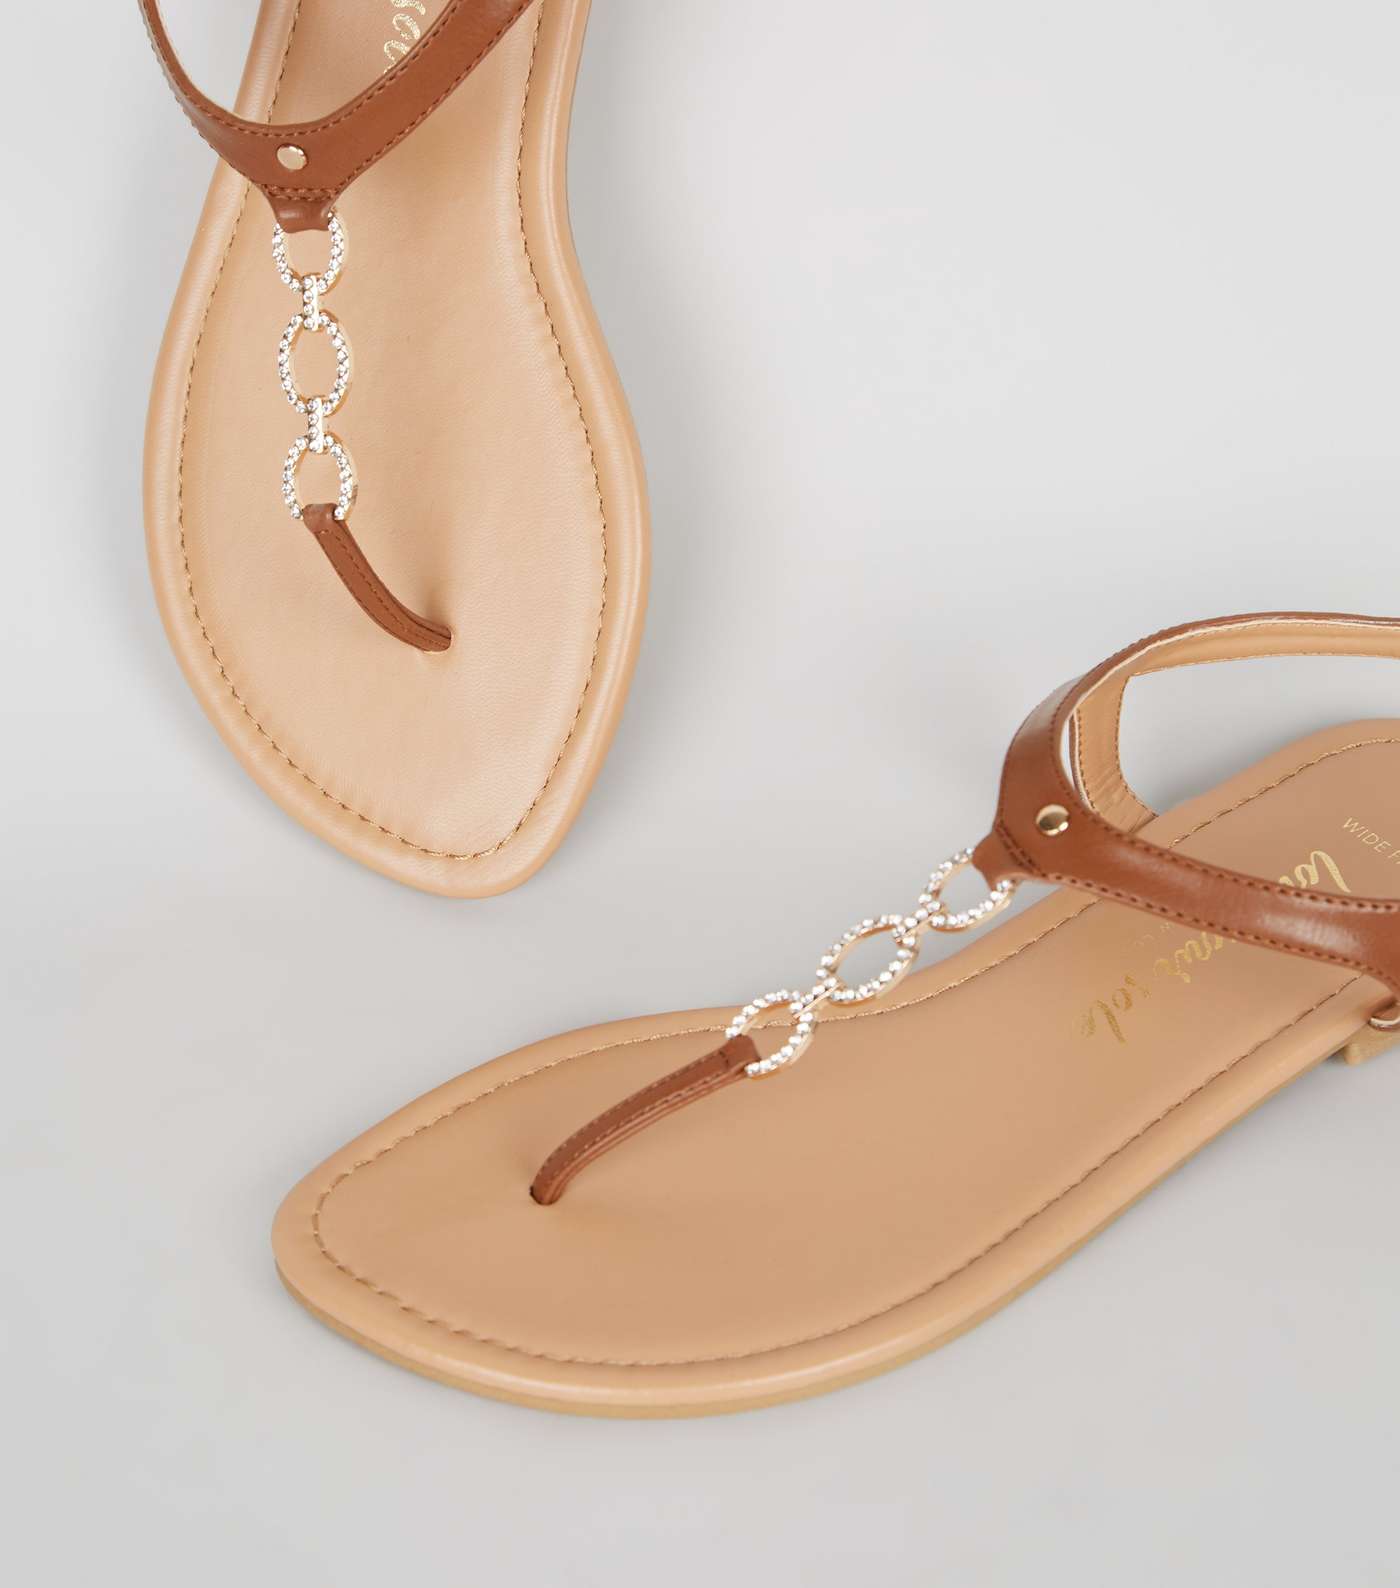 Wide Fit Tan Leather-Look Diamanté Chain Sandals Image 4